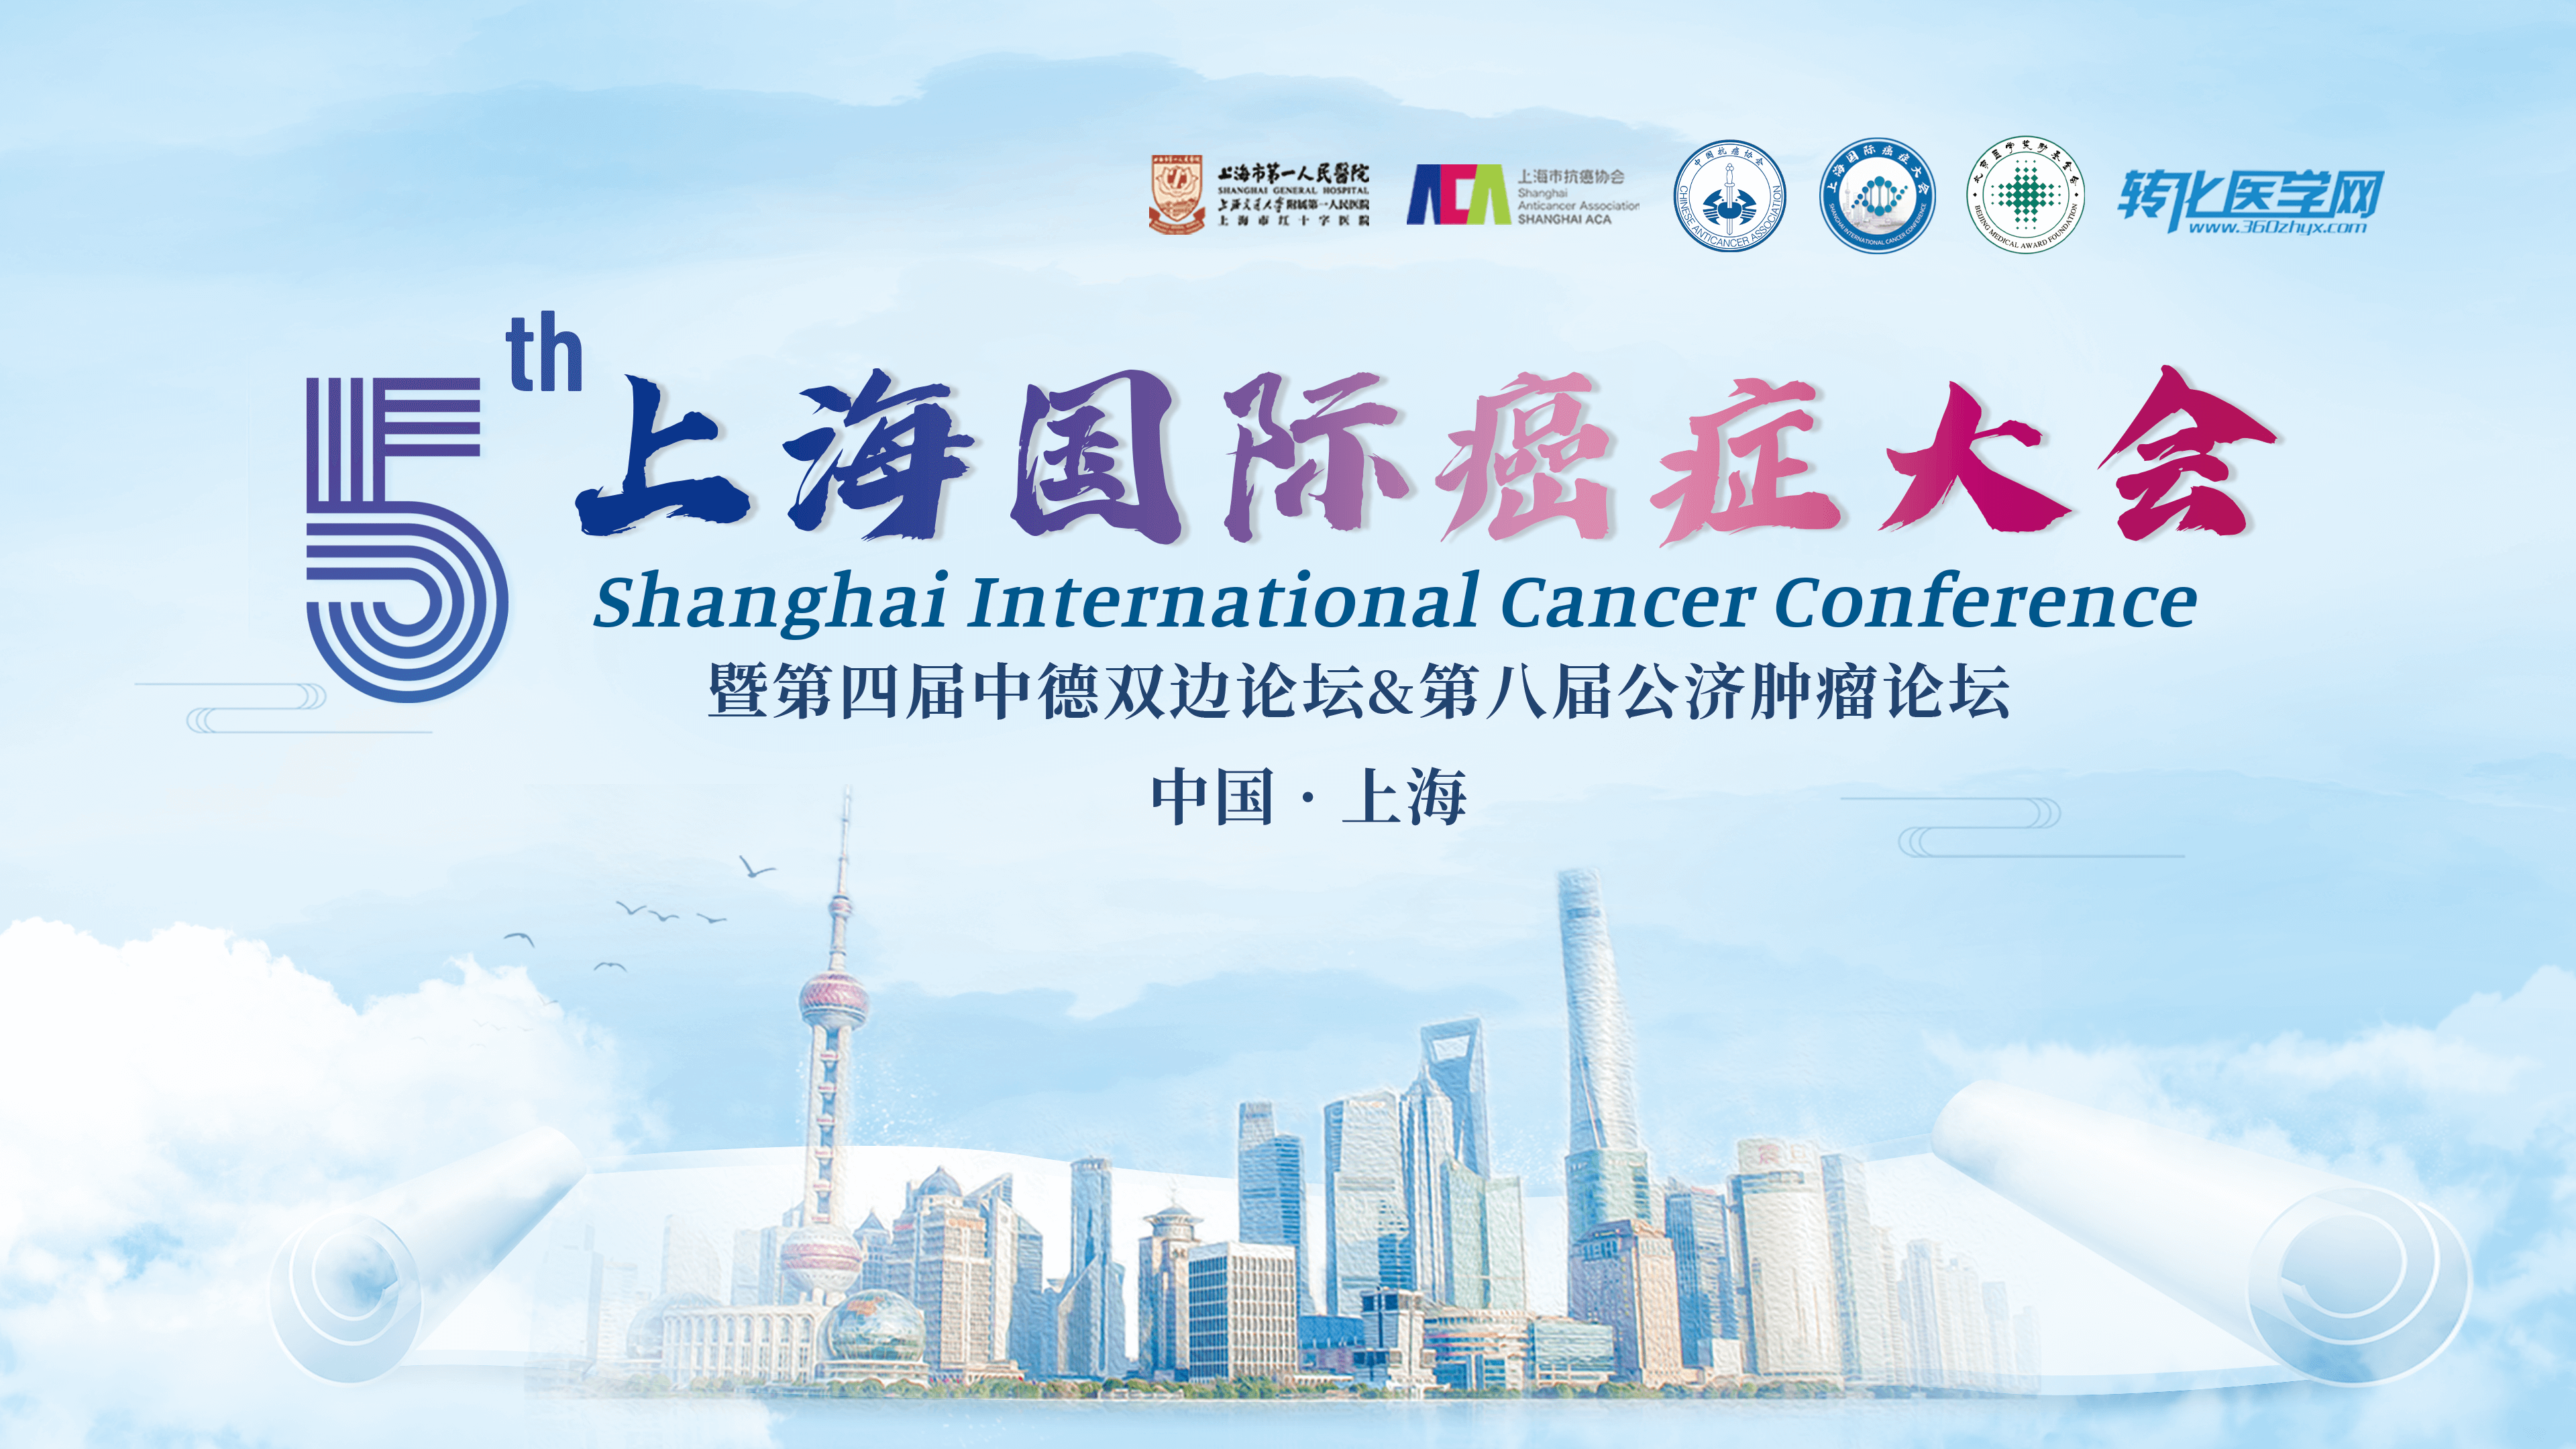 会议通知 |基因有限邀您共赴第五届上海国际癌症大会